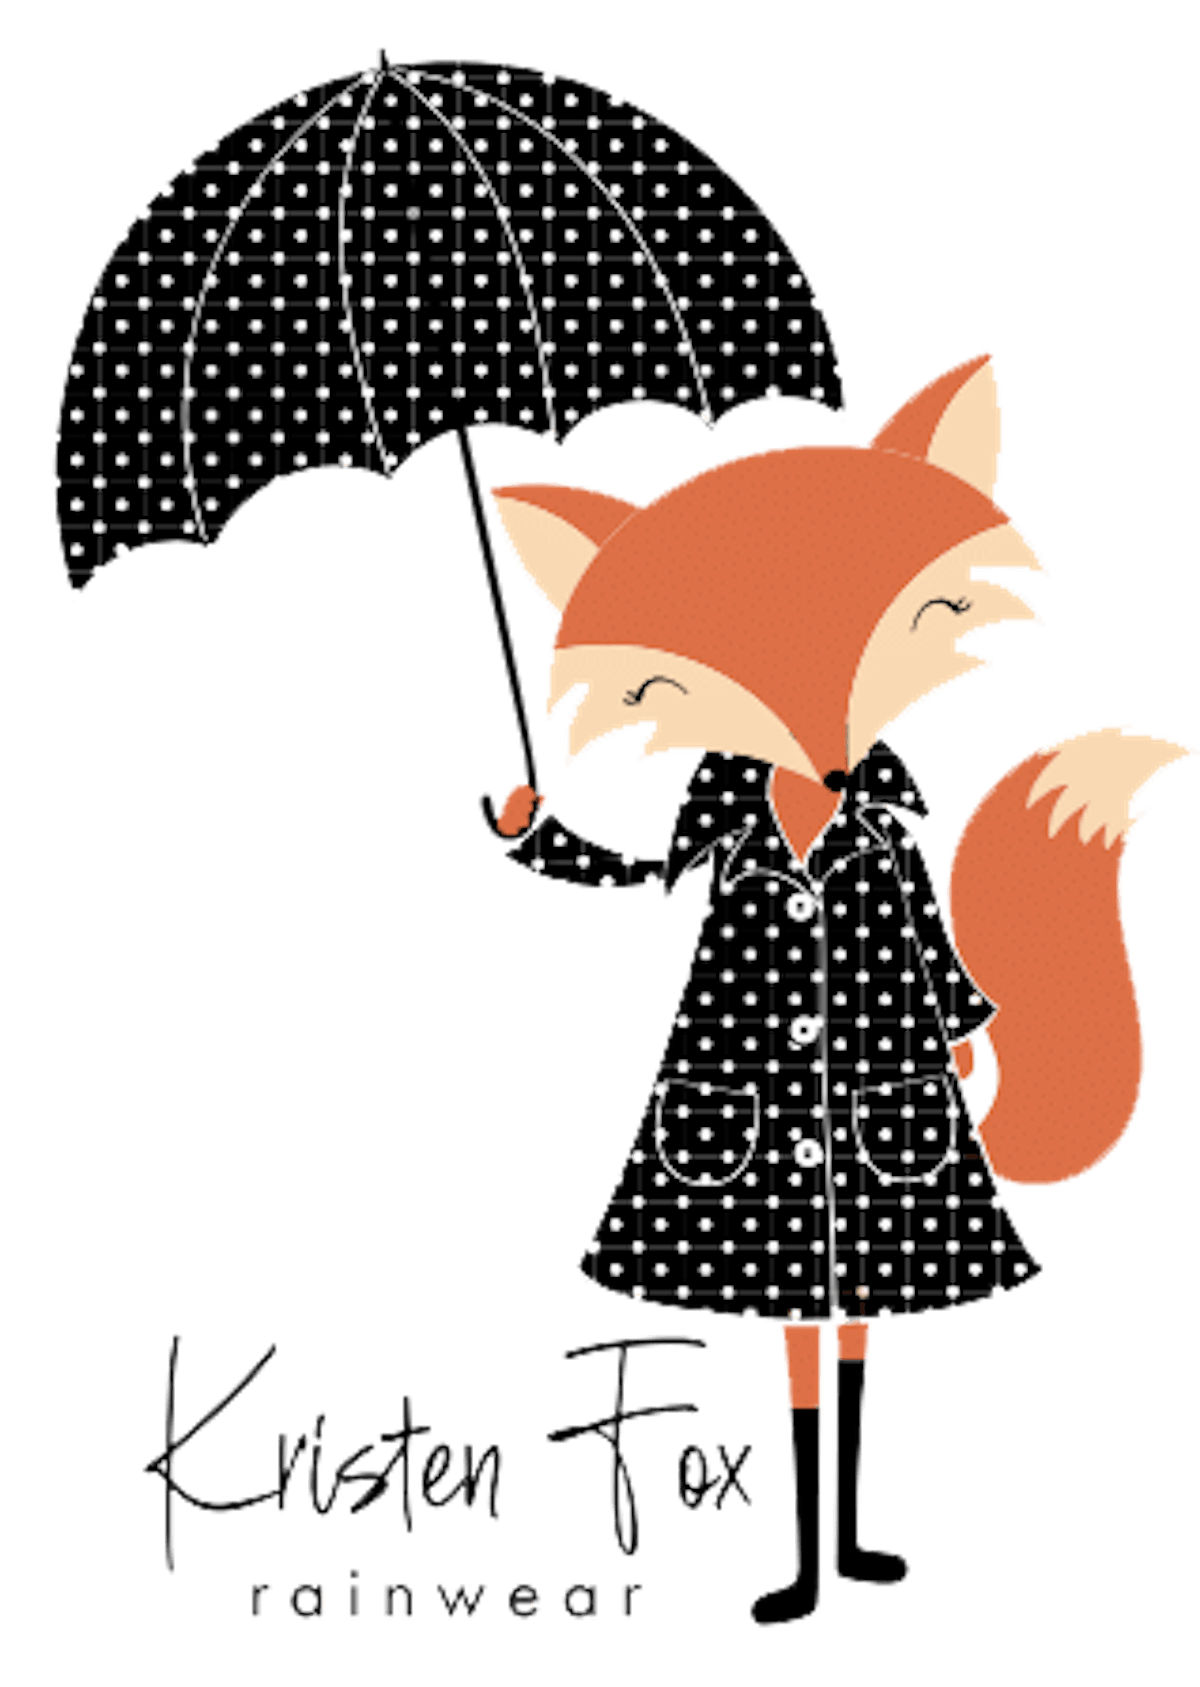 Kristen Fox Rainwear logo that when selected will take you to the Kristen Fox Rainwear website